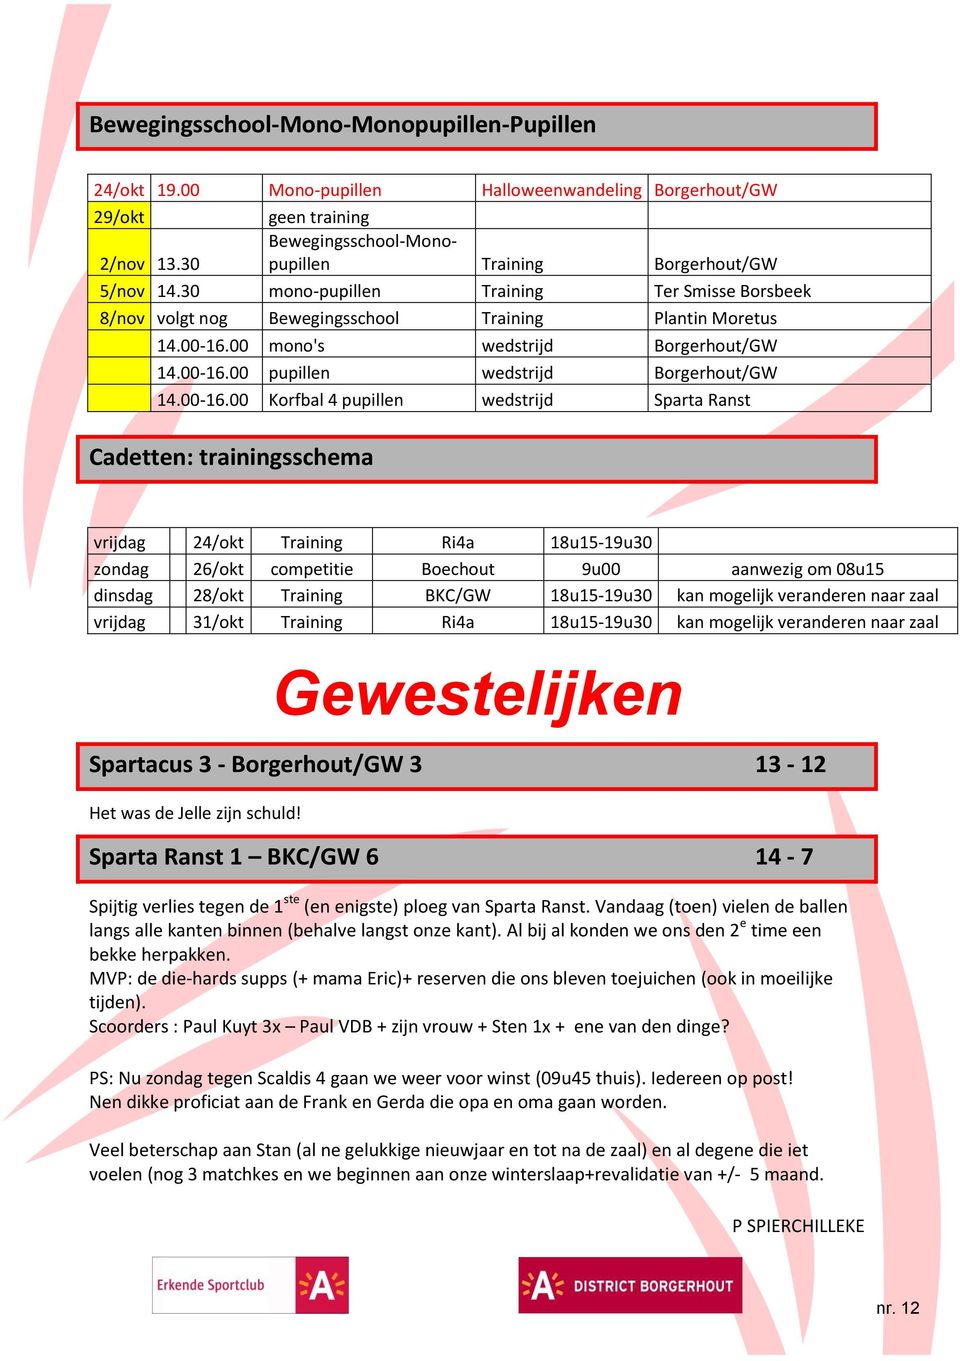 00 mono's wedstrijd Borgerhout/GW 14.00-16.